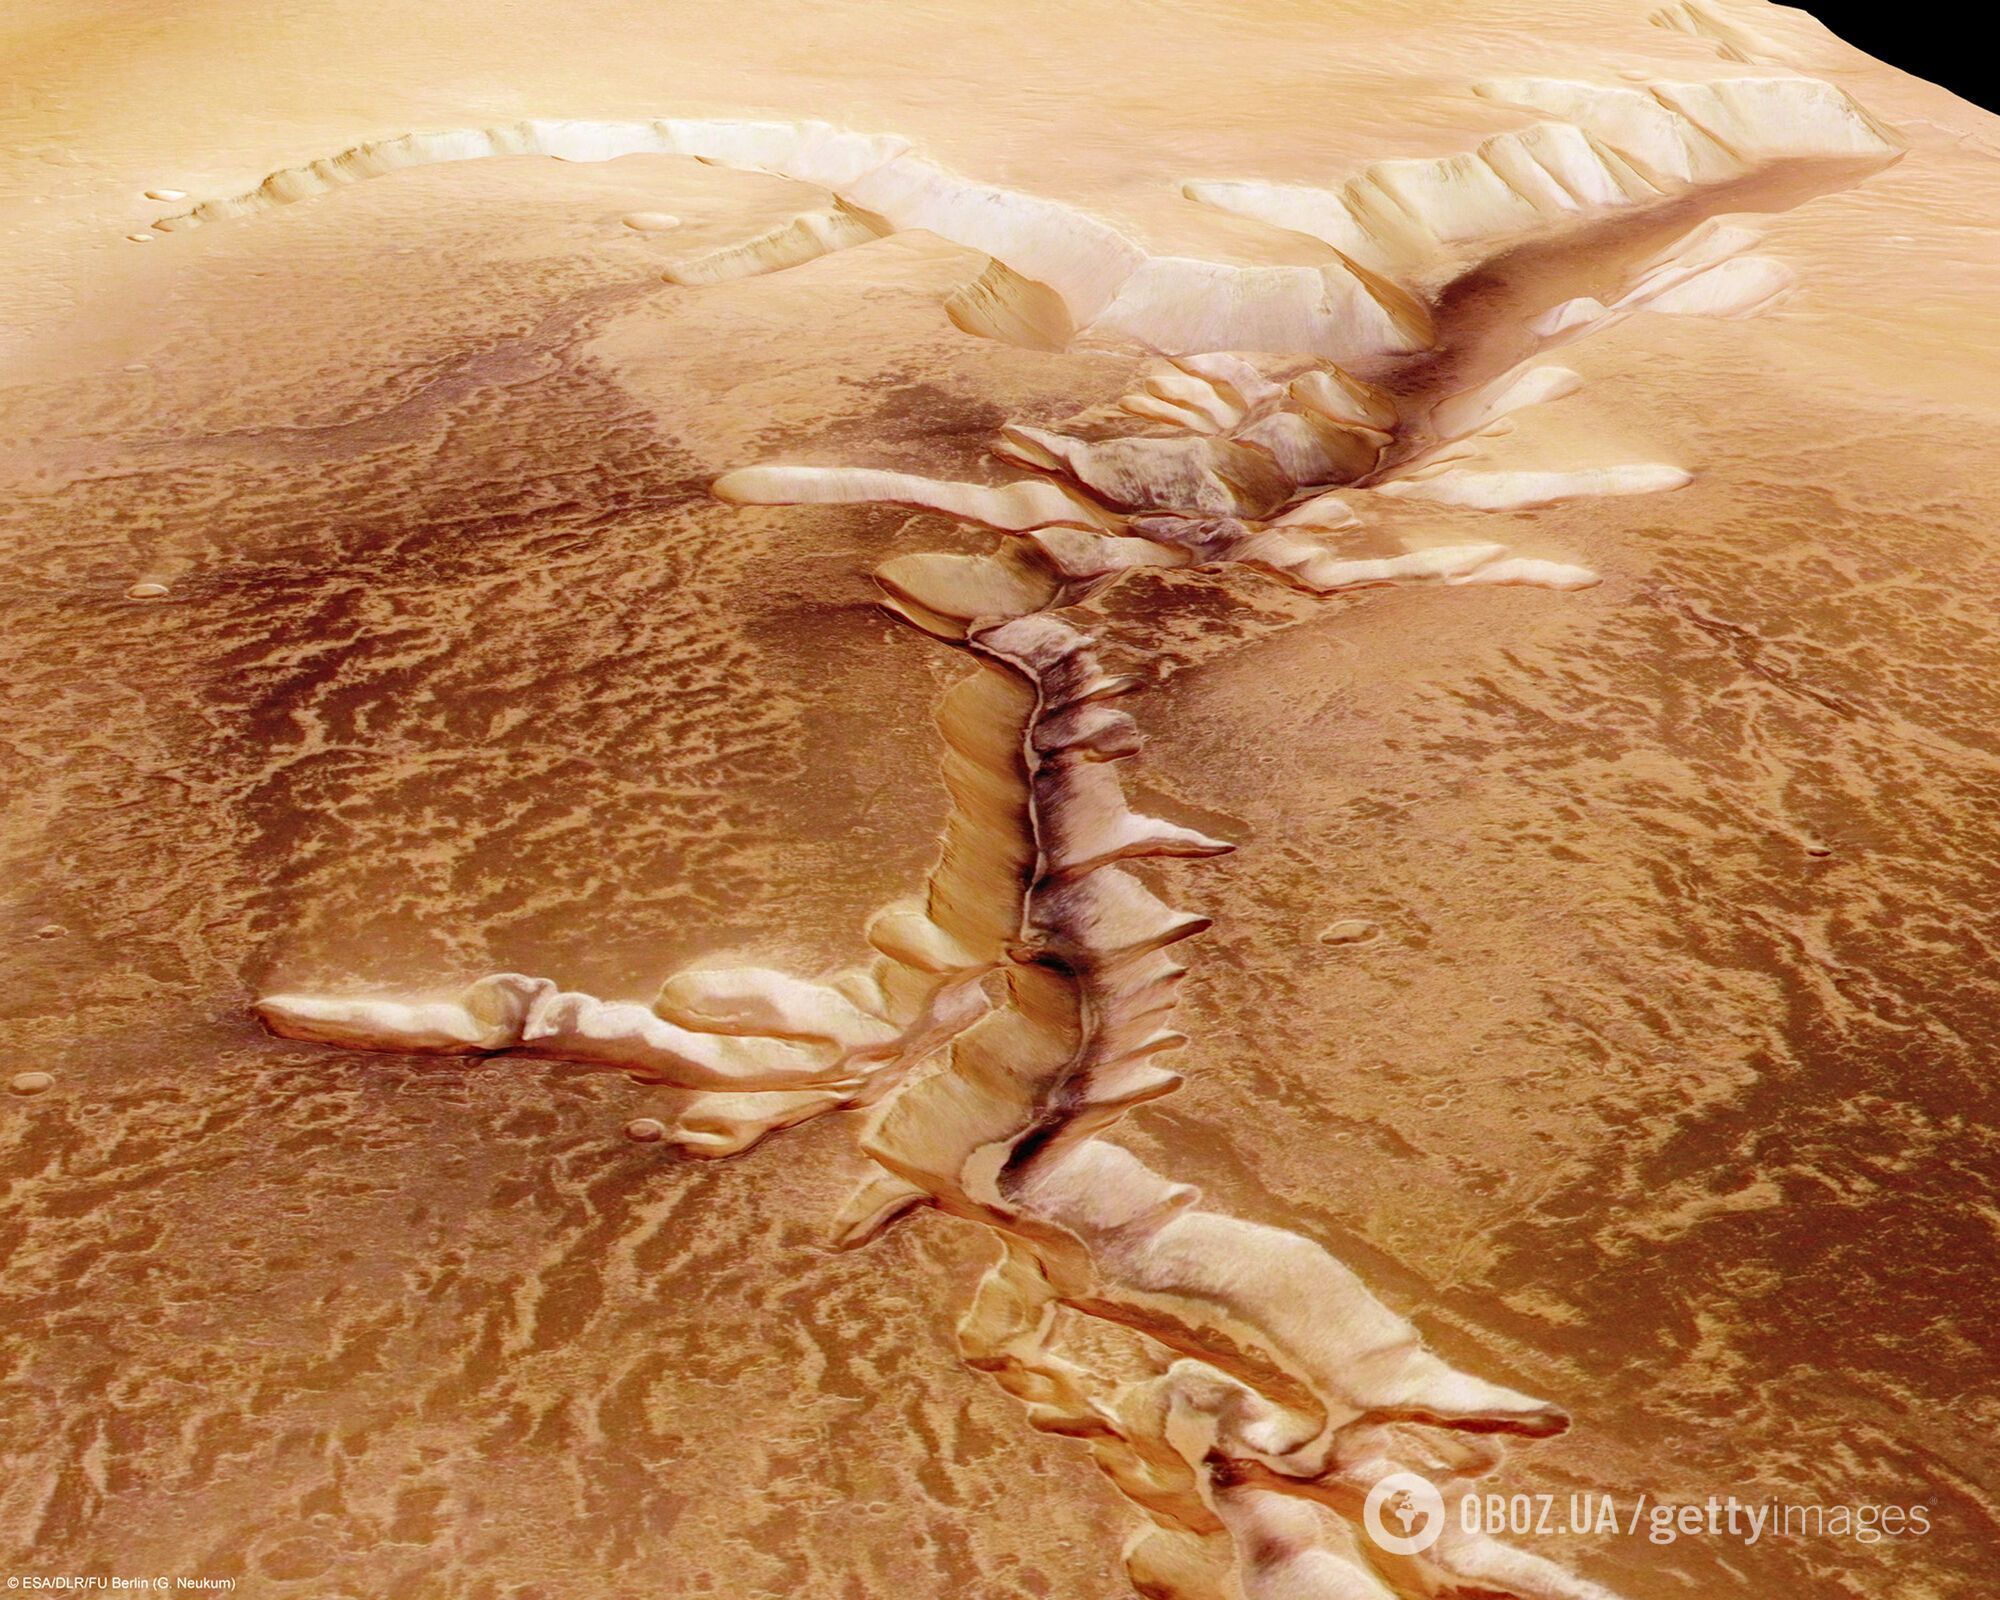 Есть ли жизнь на Марсе? Ученые обнаружили растение, способное выжить на красной планете. Фото